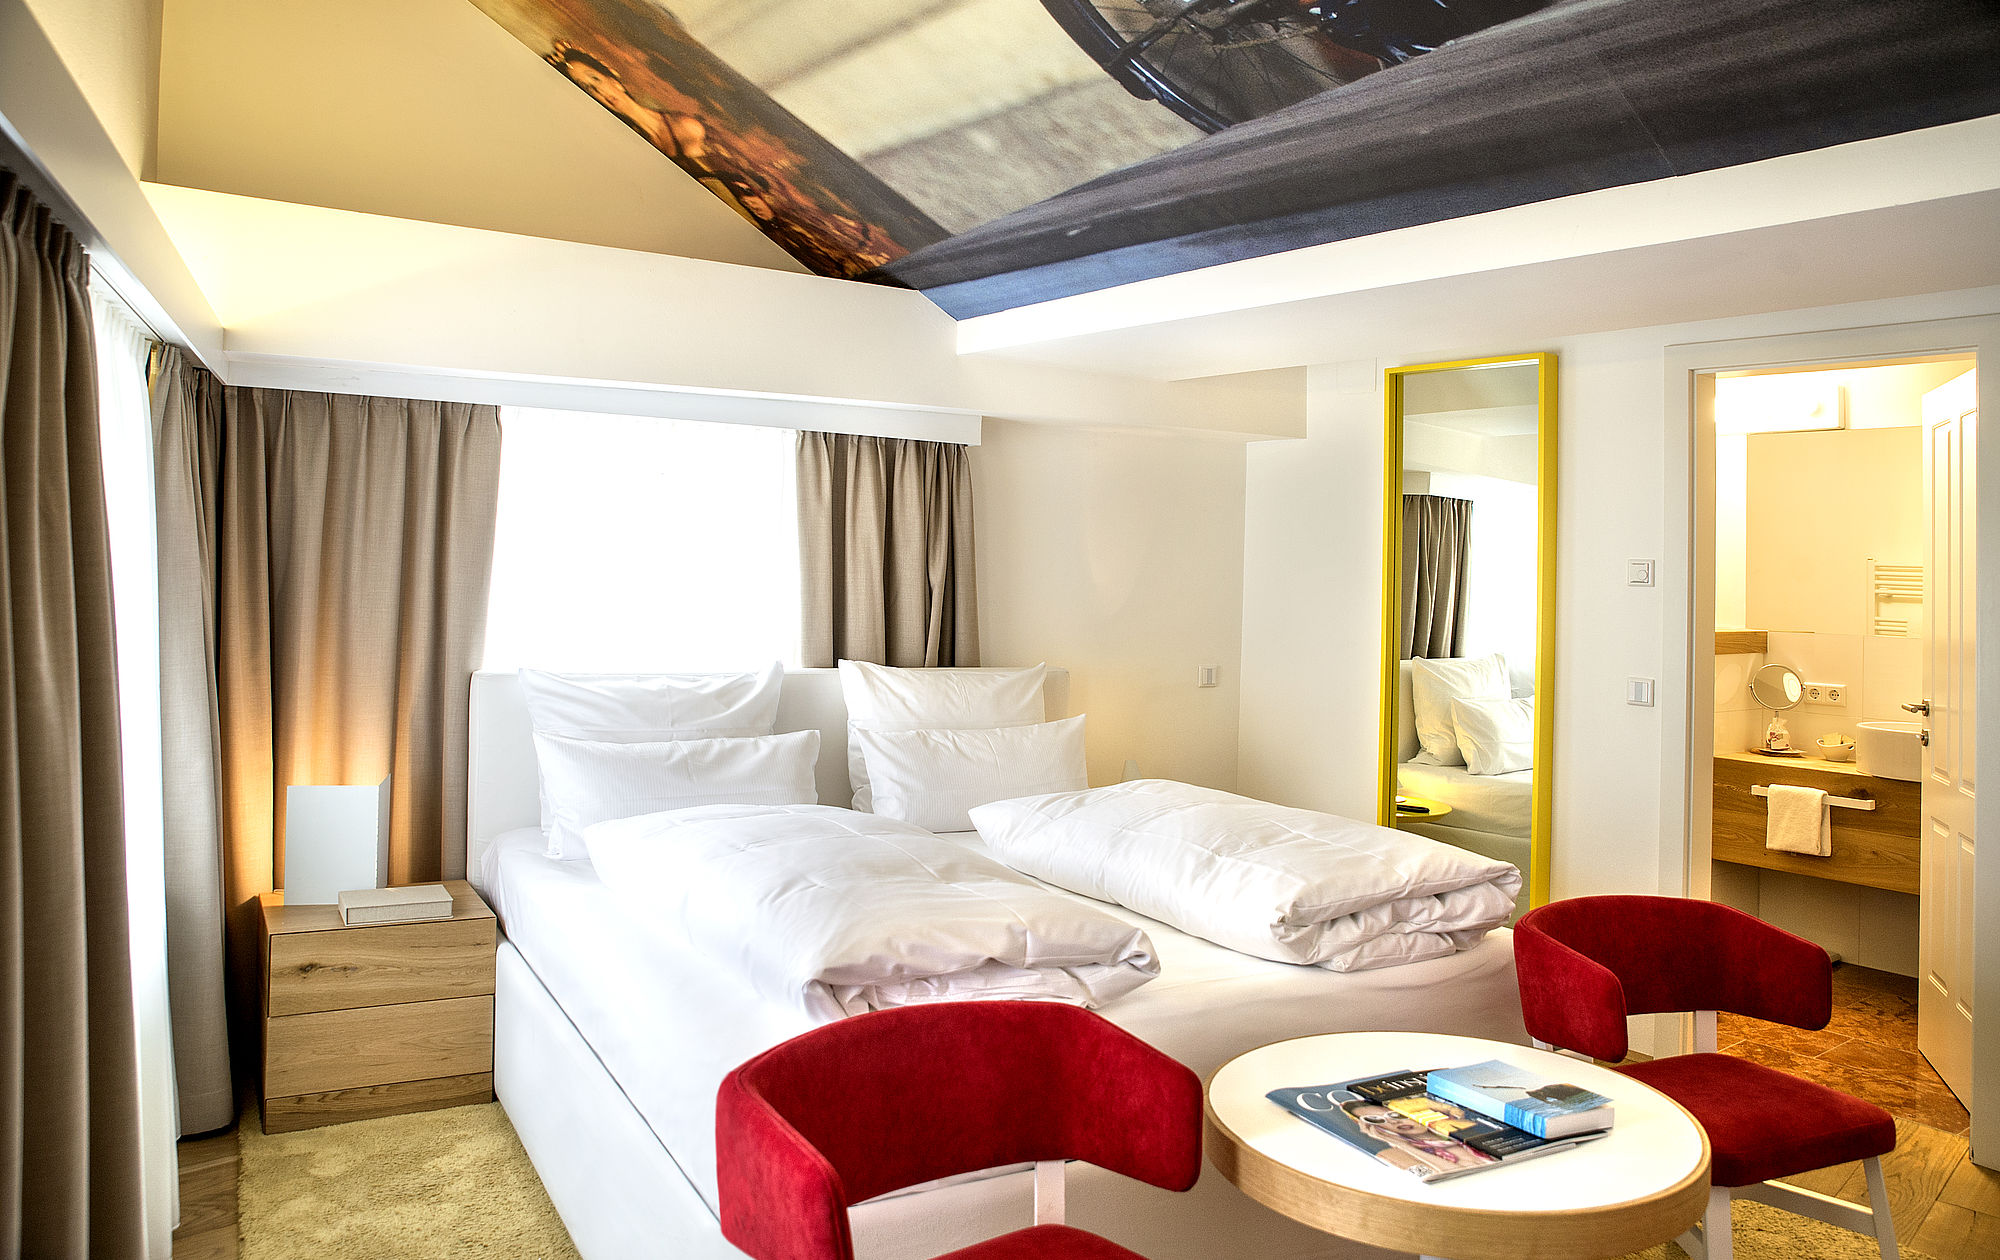 Doppelzimmer "Buhlschaft" mit Dachschräge und stylishem Mobiliar im romantischen  Hotel Salzburg